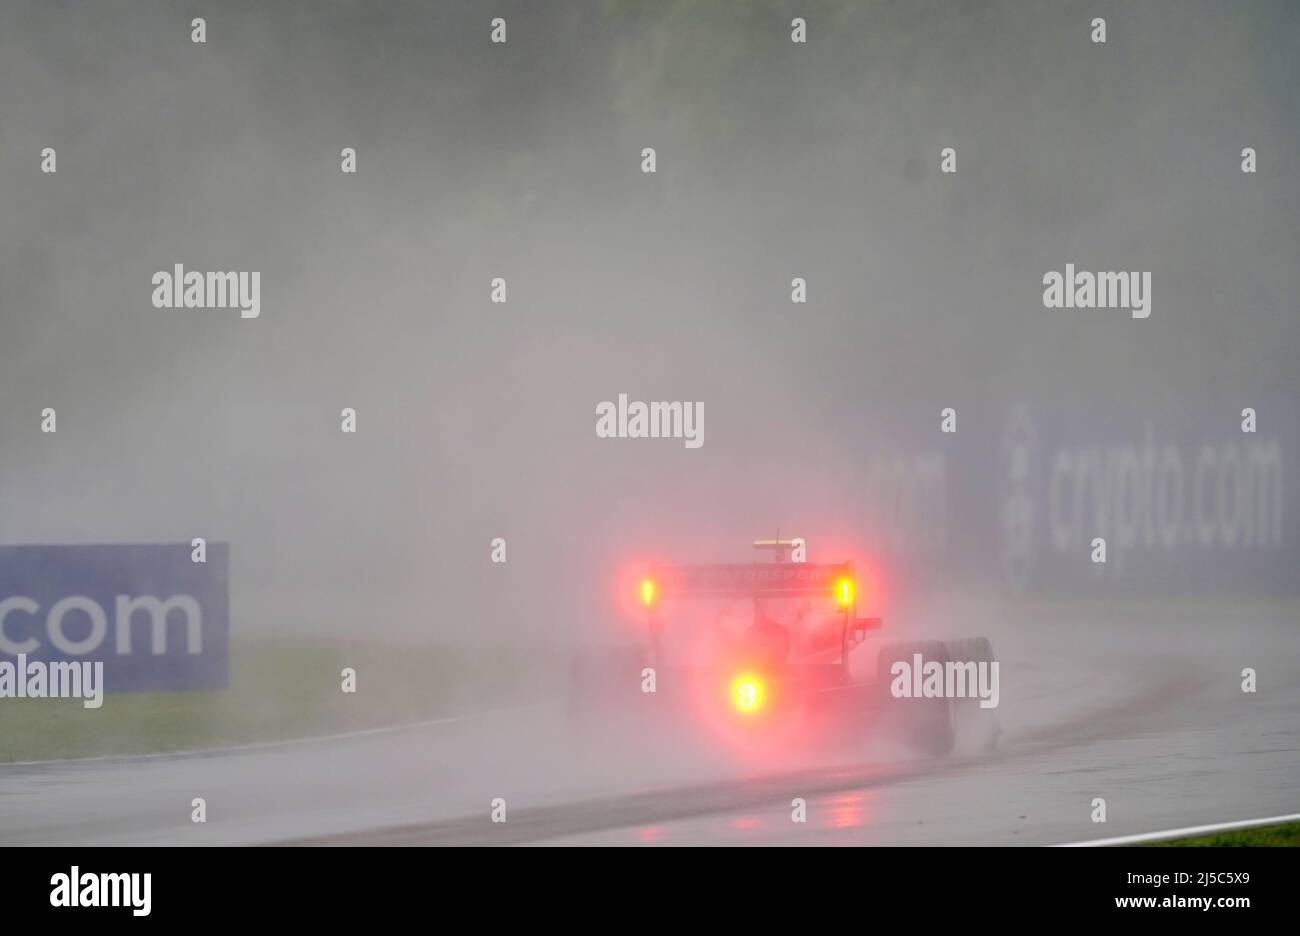 Une voiture freine sous la pluie lors de la session d'entraînement de Formule 3 de la FIA du Grand Prix Emilia Romagna sur le circuit Autodromo Internazionale Enzo e Dino Ferrari en Italie, mieux connu sous le nom d'Imola. Date de la photo: Vendredi 22 avril 2022. Banque D'Images